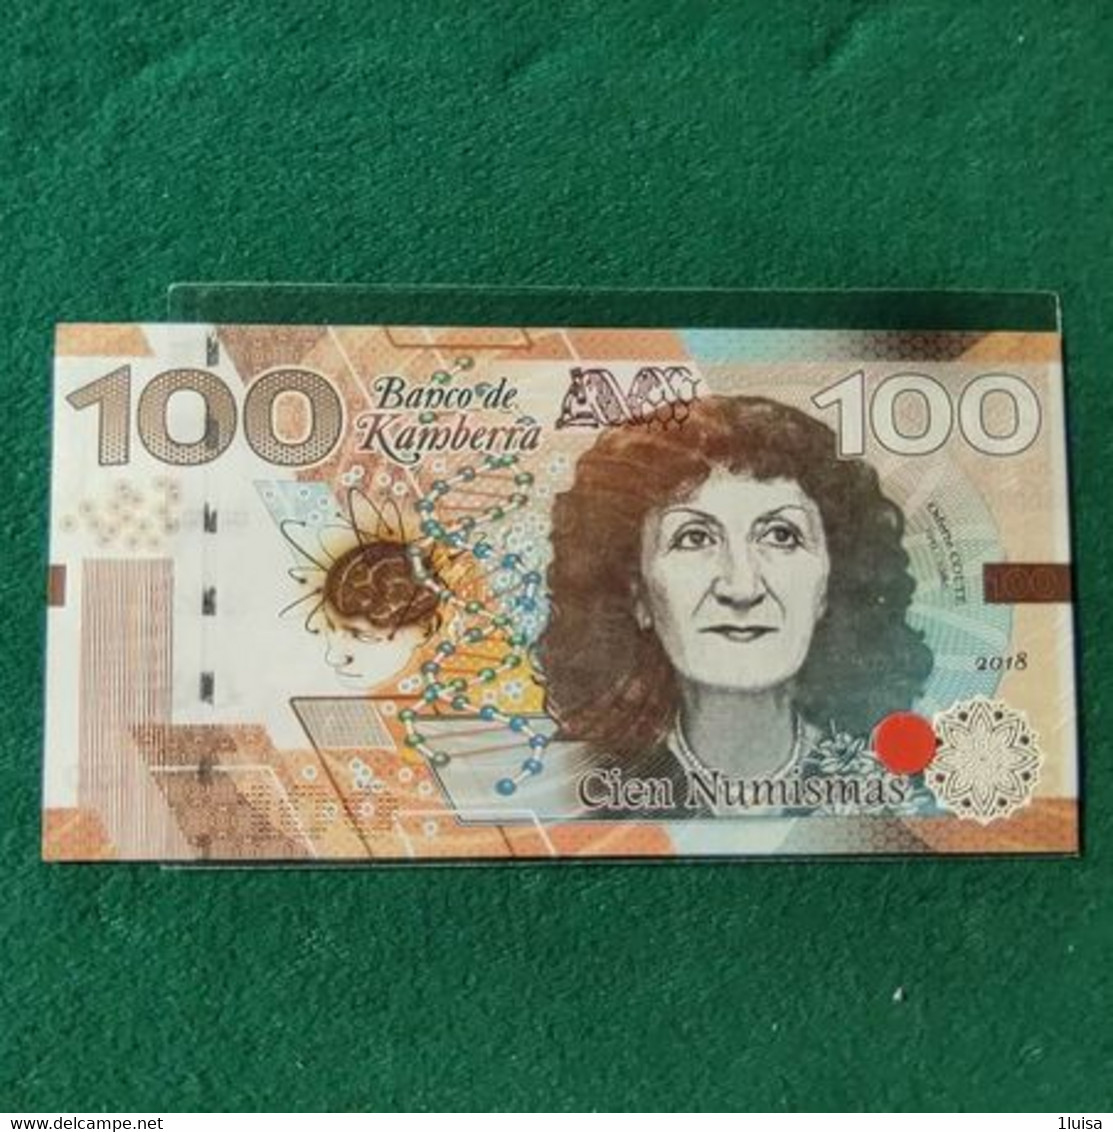 AUSTRALIA FANTASY KAMBERRA 100 2019 - 1988 (10$ Kunststoffgeldscheine)